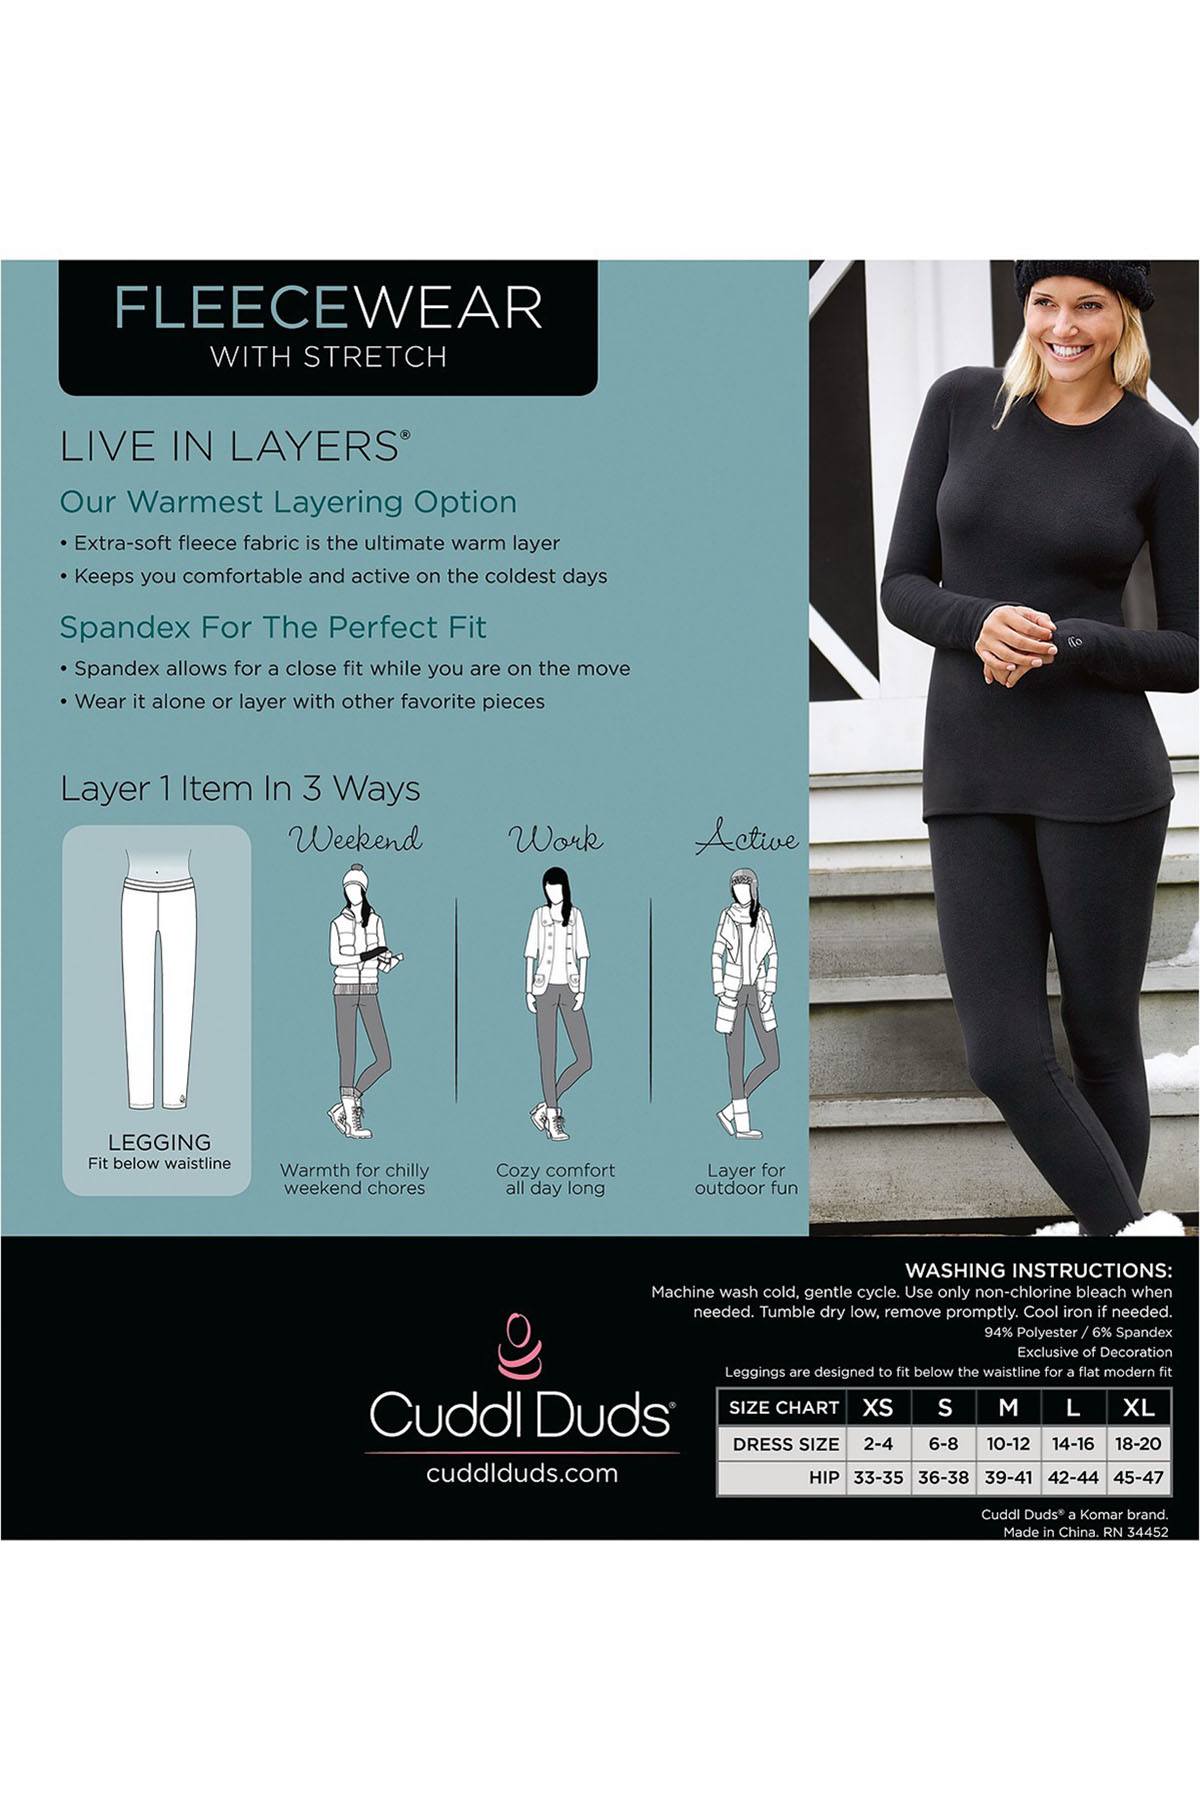 CuddlDuds Heather-Charcoal Fleecewear with Stretch Warm-Layer Legging